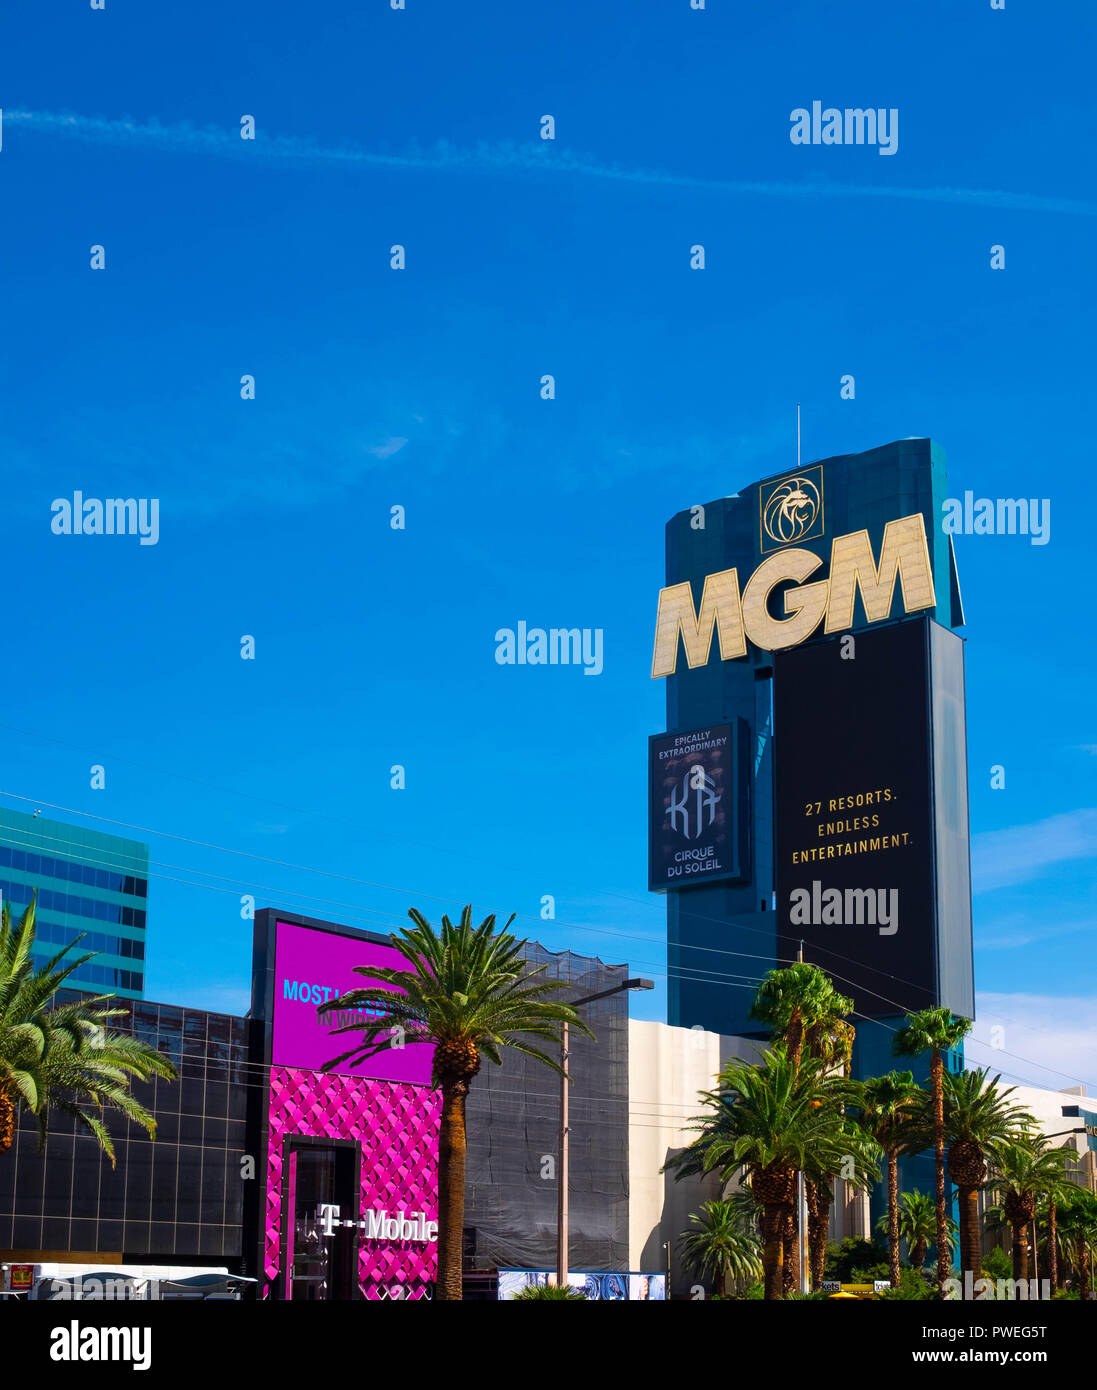 El hotel MGM y el casino resort en el horizonte del destino turístico las Vegas Foto de stock